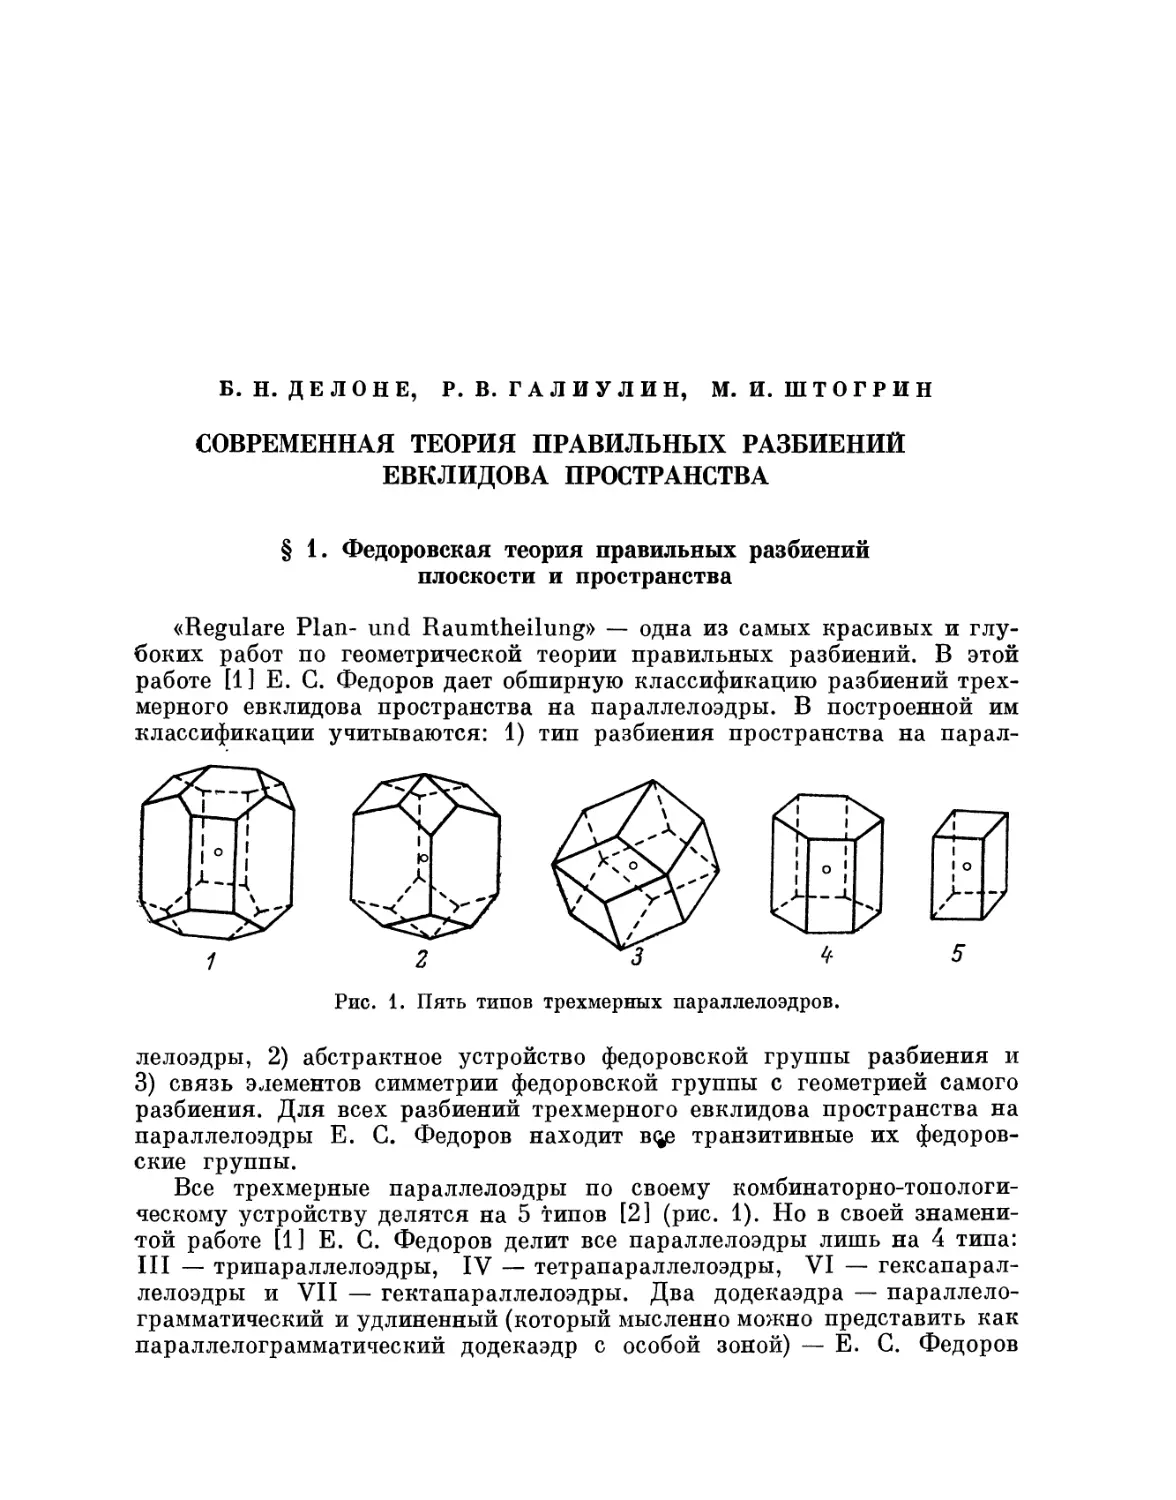 Б.Н. Делоне, Р.В. Галиулин, М.И. Штогрин. Современная теория правильных разбиений евклидова пространства